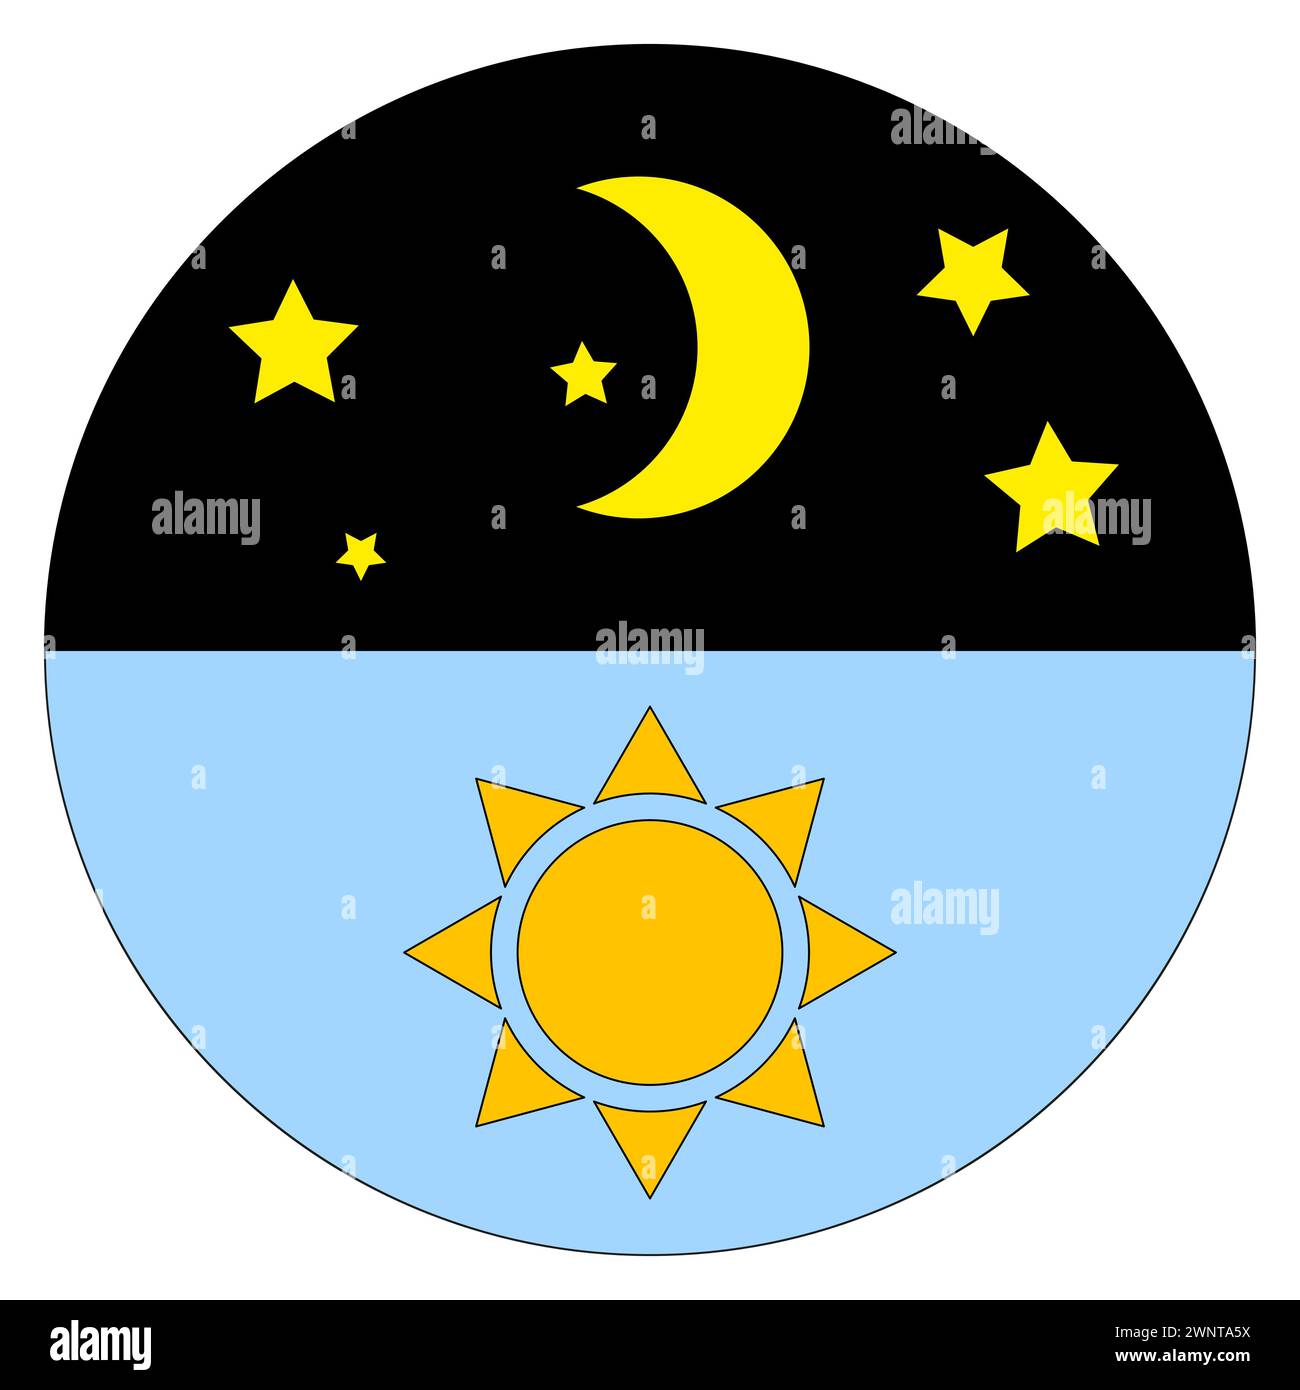 Création jour et nuit. Soleil, lune, étoiles dans le ciel. Cycle céleste. Illustration vectorielle. SPE 10. Image de stock. Illustration de Vecteur